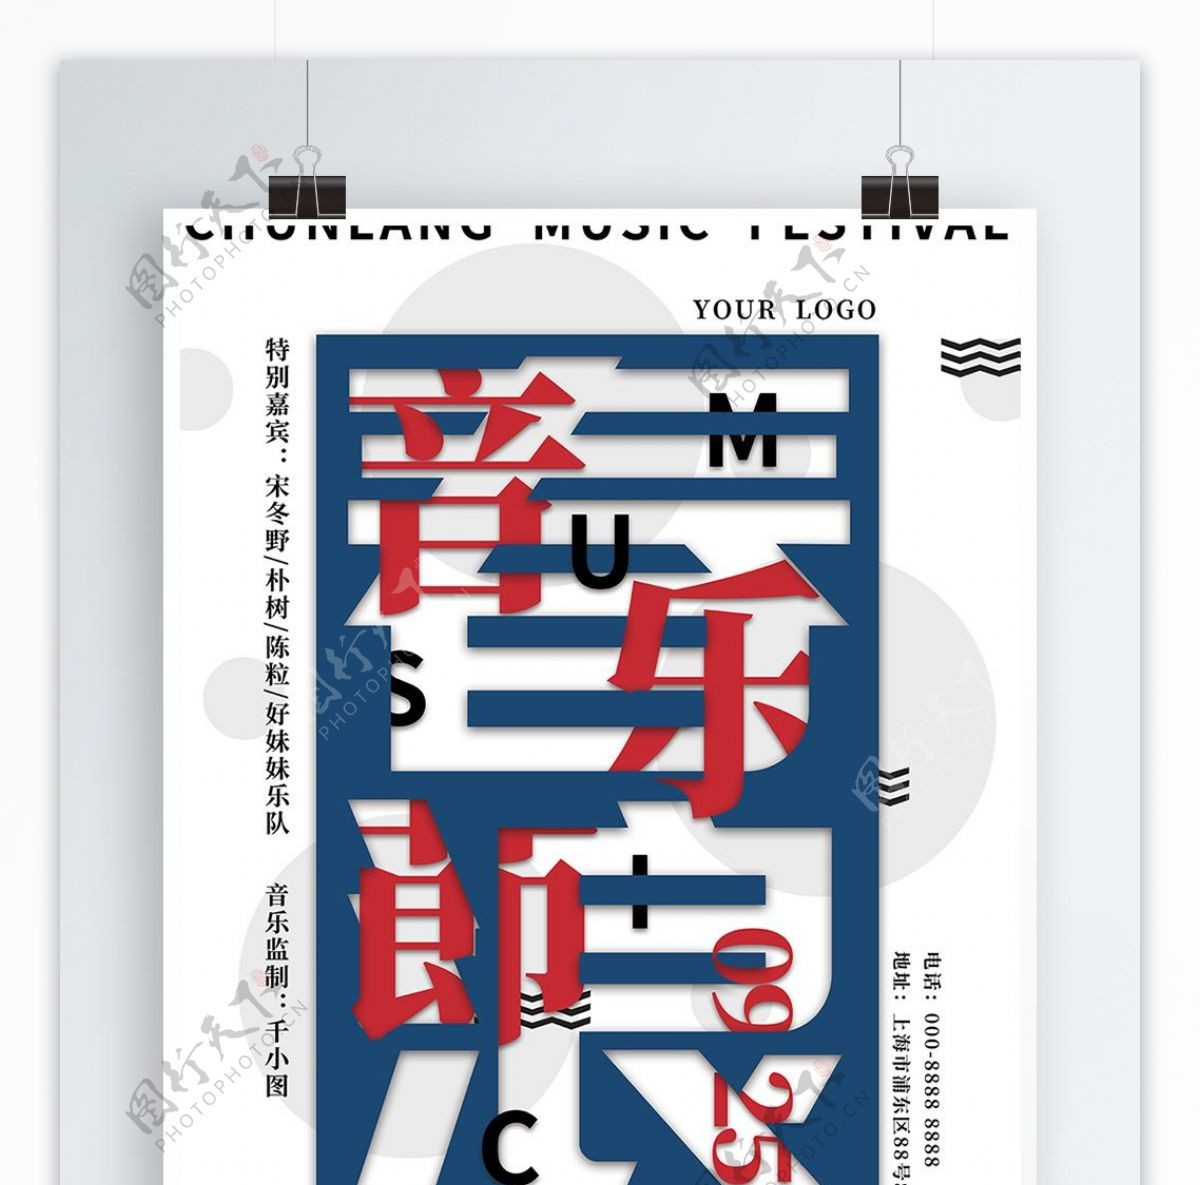 简约设计风上海春浪音乐节宣传海报